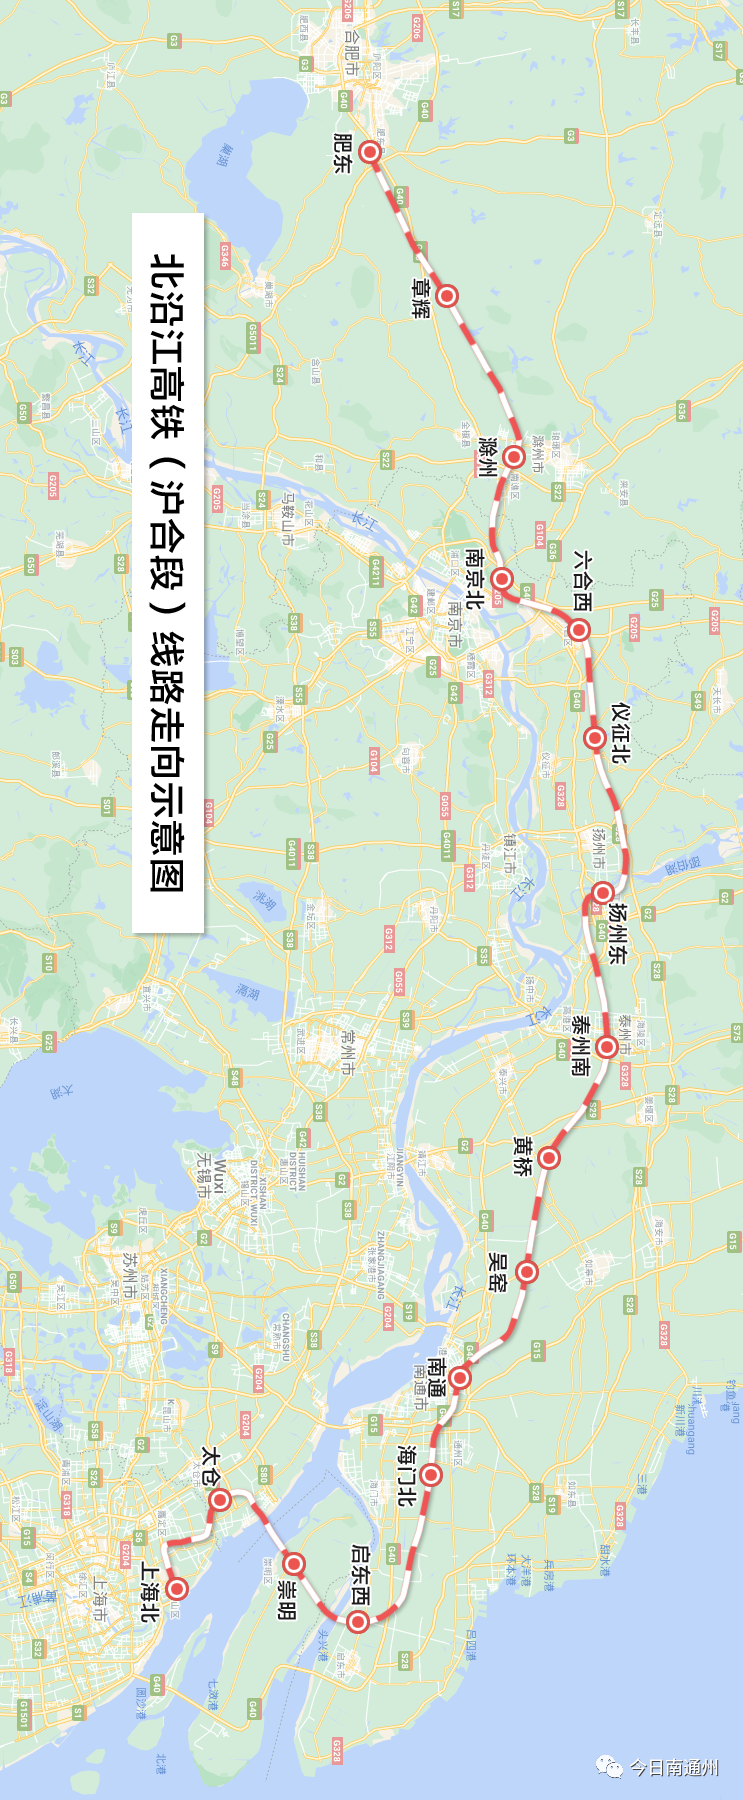 好消息!2025年,北沿江铁路将和南京北站同步建成